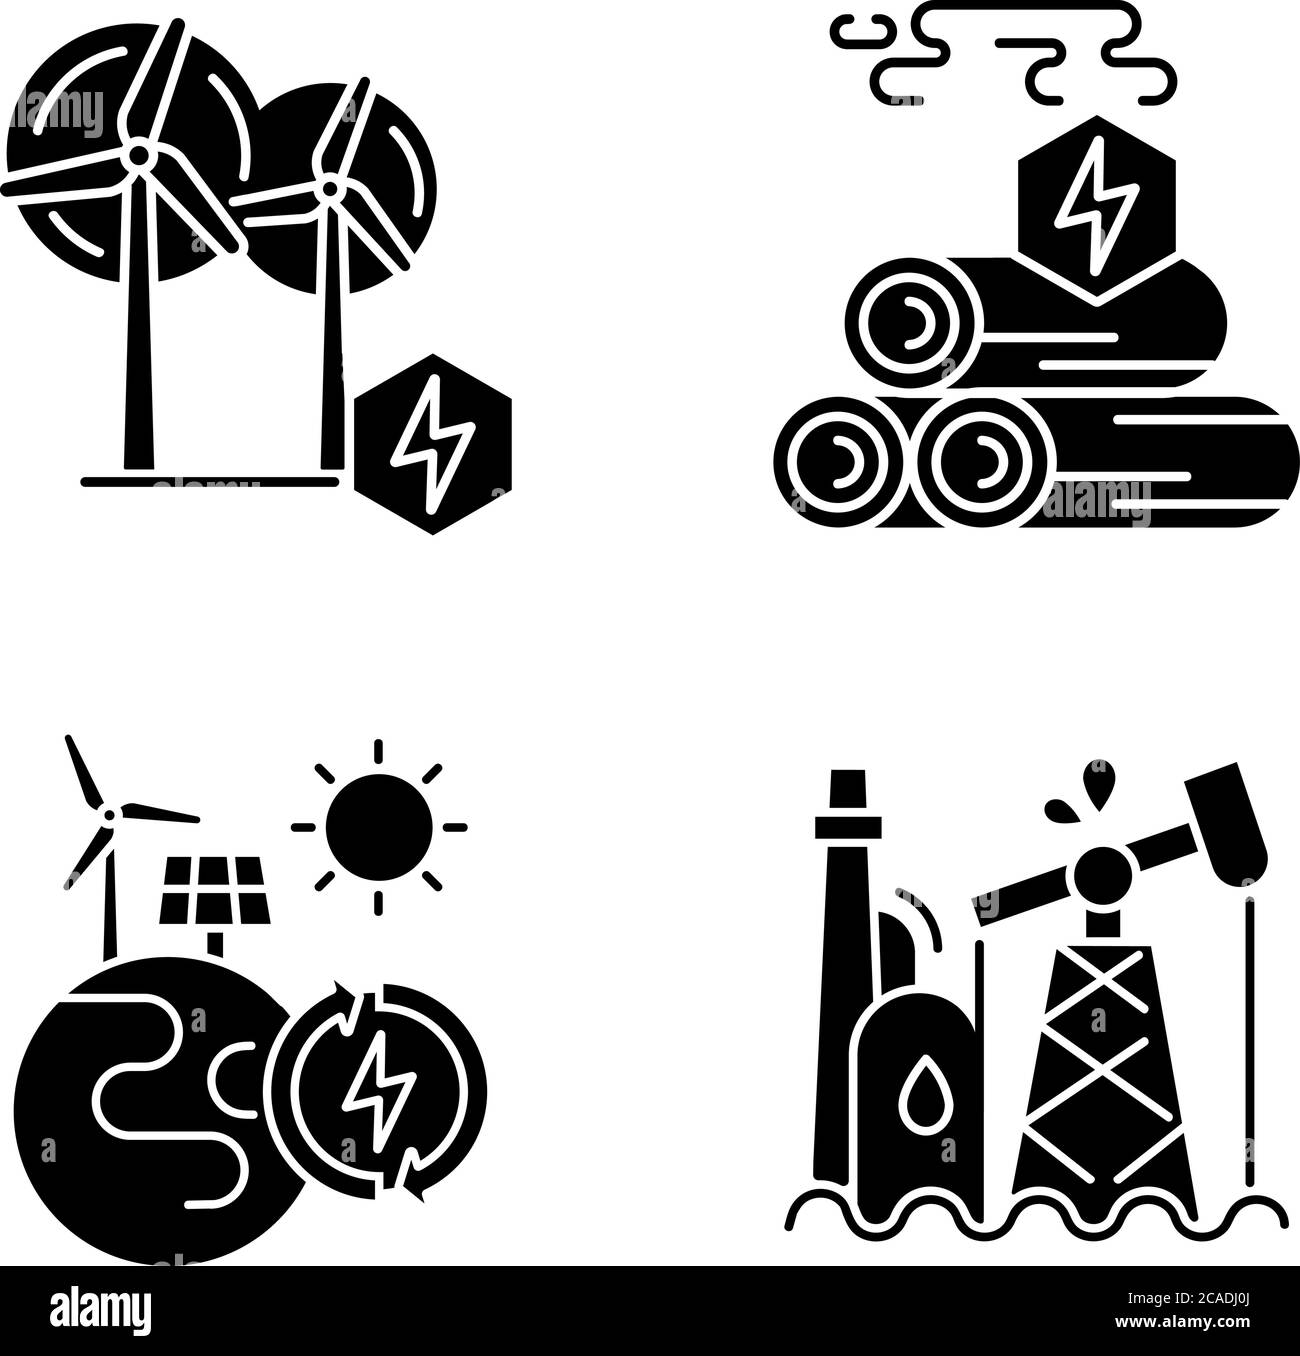 Icônes de glyphe noir d'énergie traditionnelle et alternative définies sur un espace blanc. Symboles de silhouette de l'énergie du bois, de la raffinerie de pétrole et des centrales électriques renouvelables. N/a Illustration de Vecteur